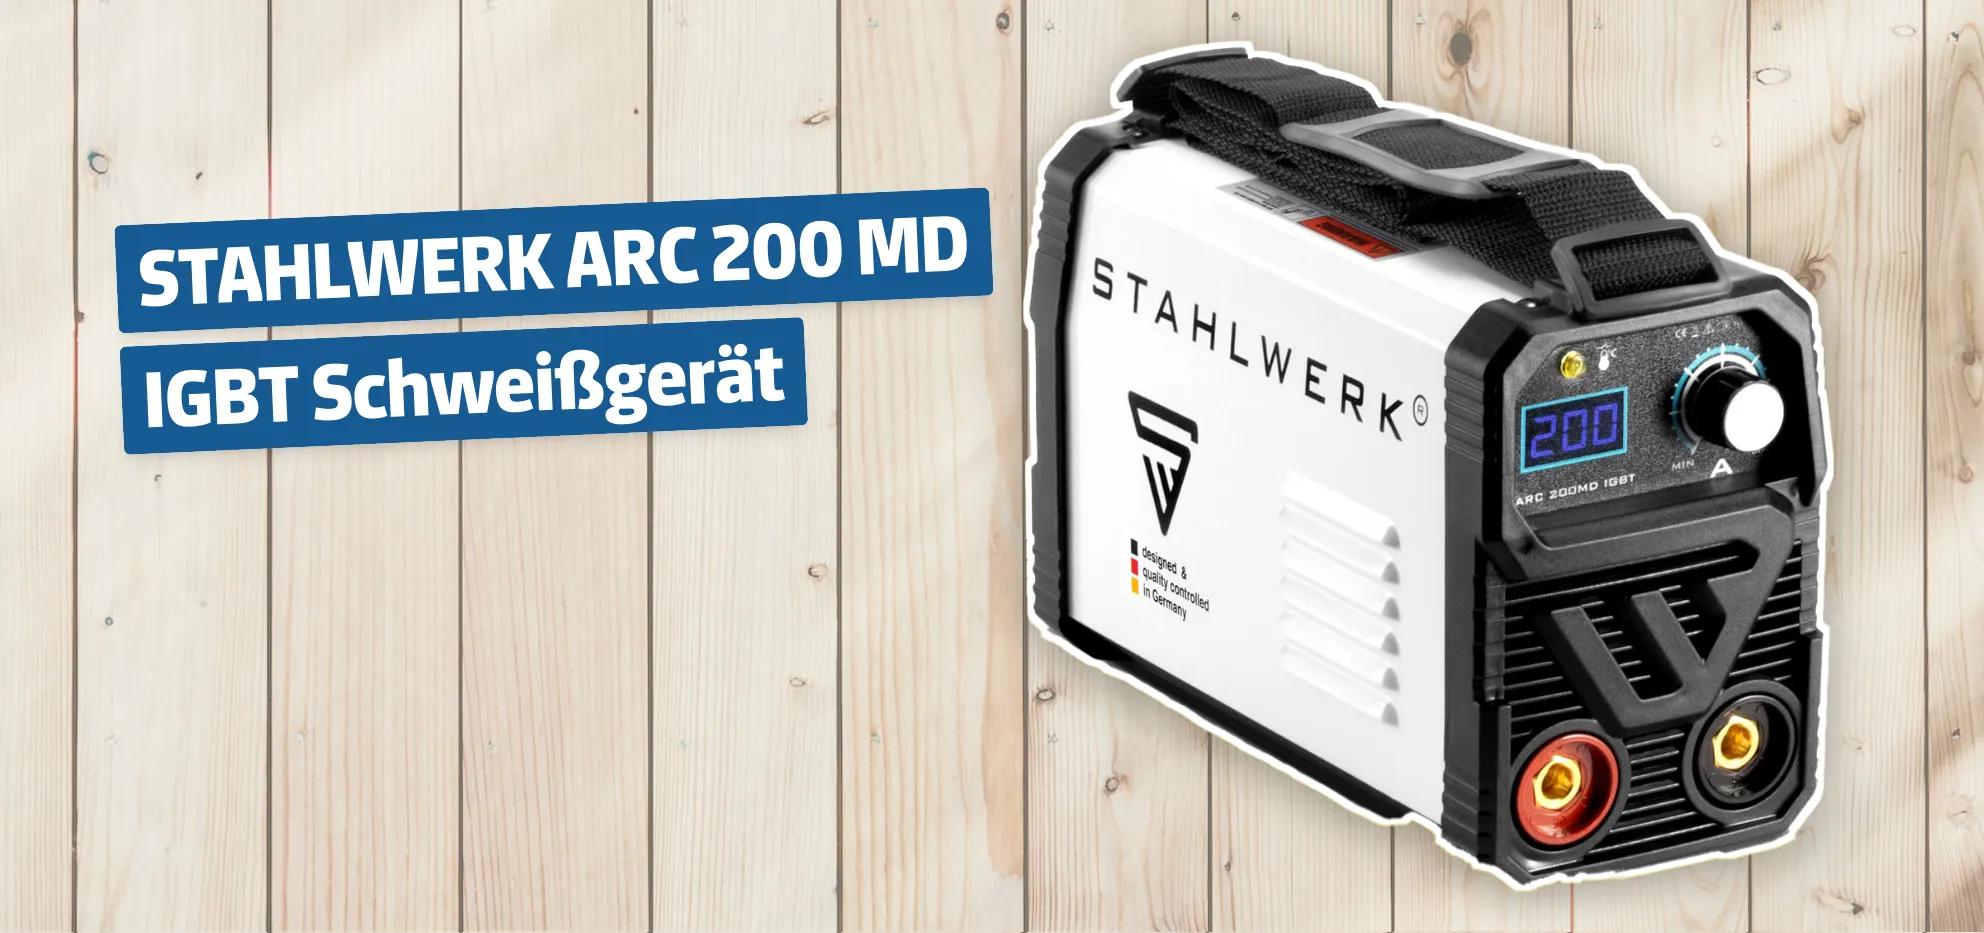 STAHLWERK ARC 200 MD IGBT Schweißgerät